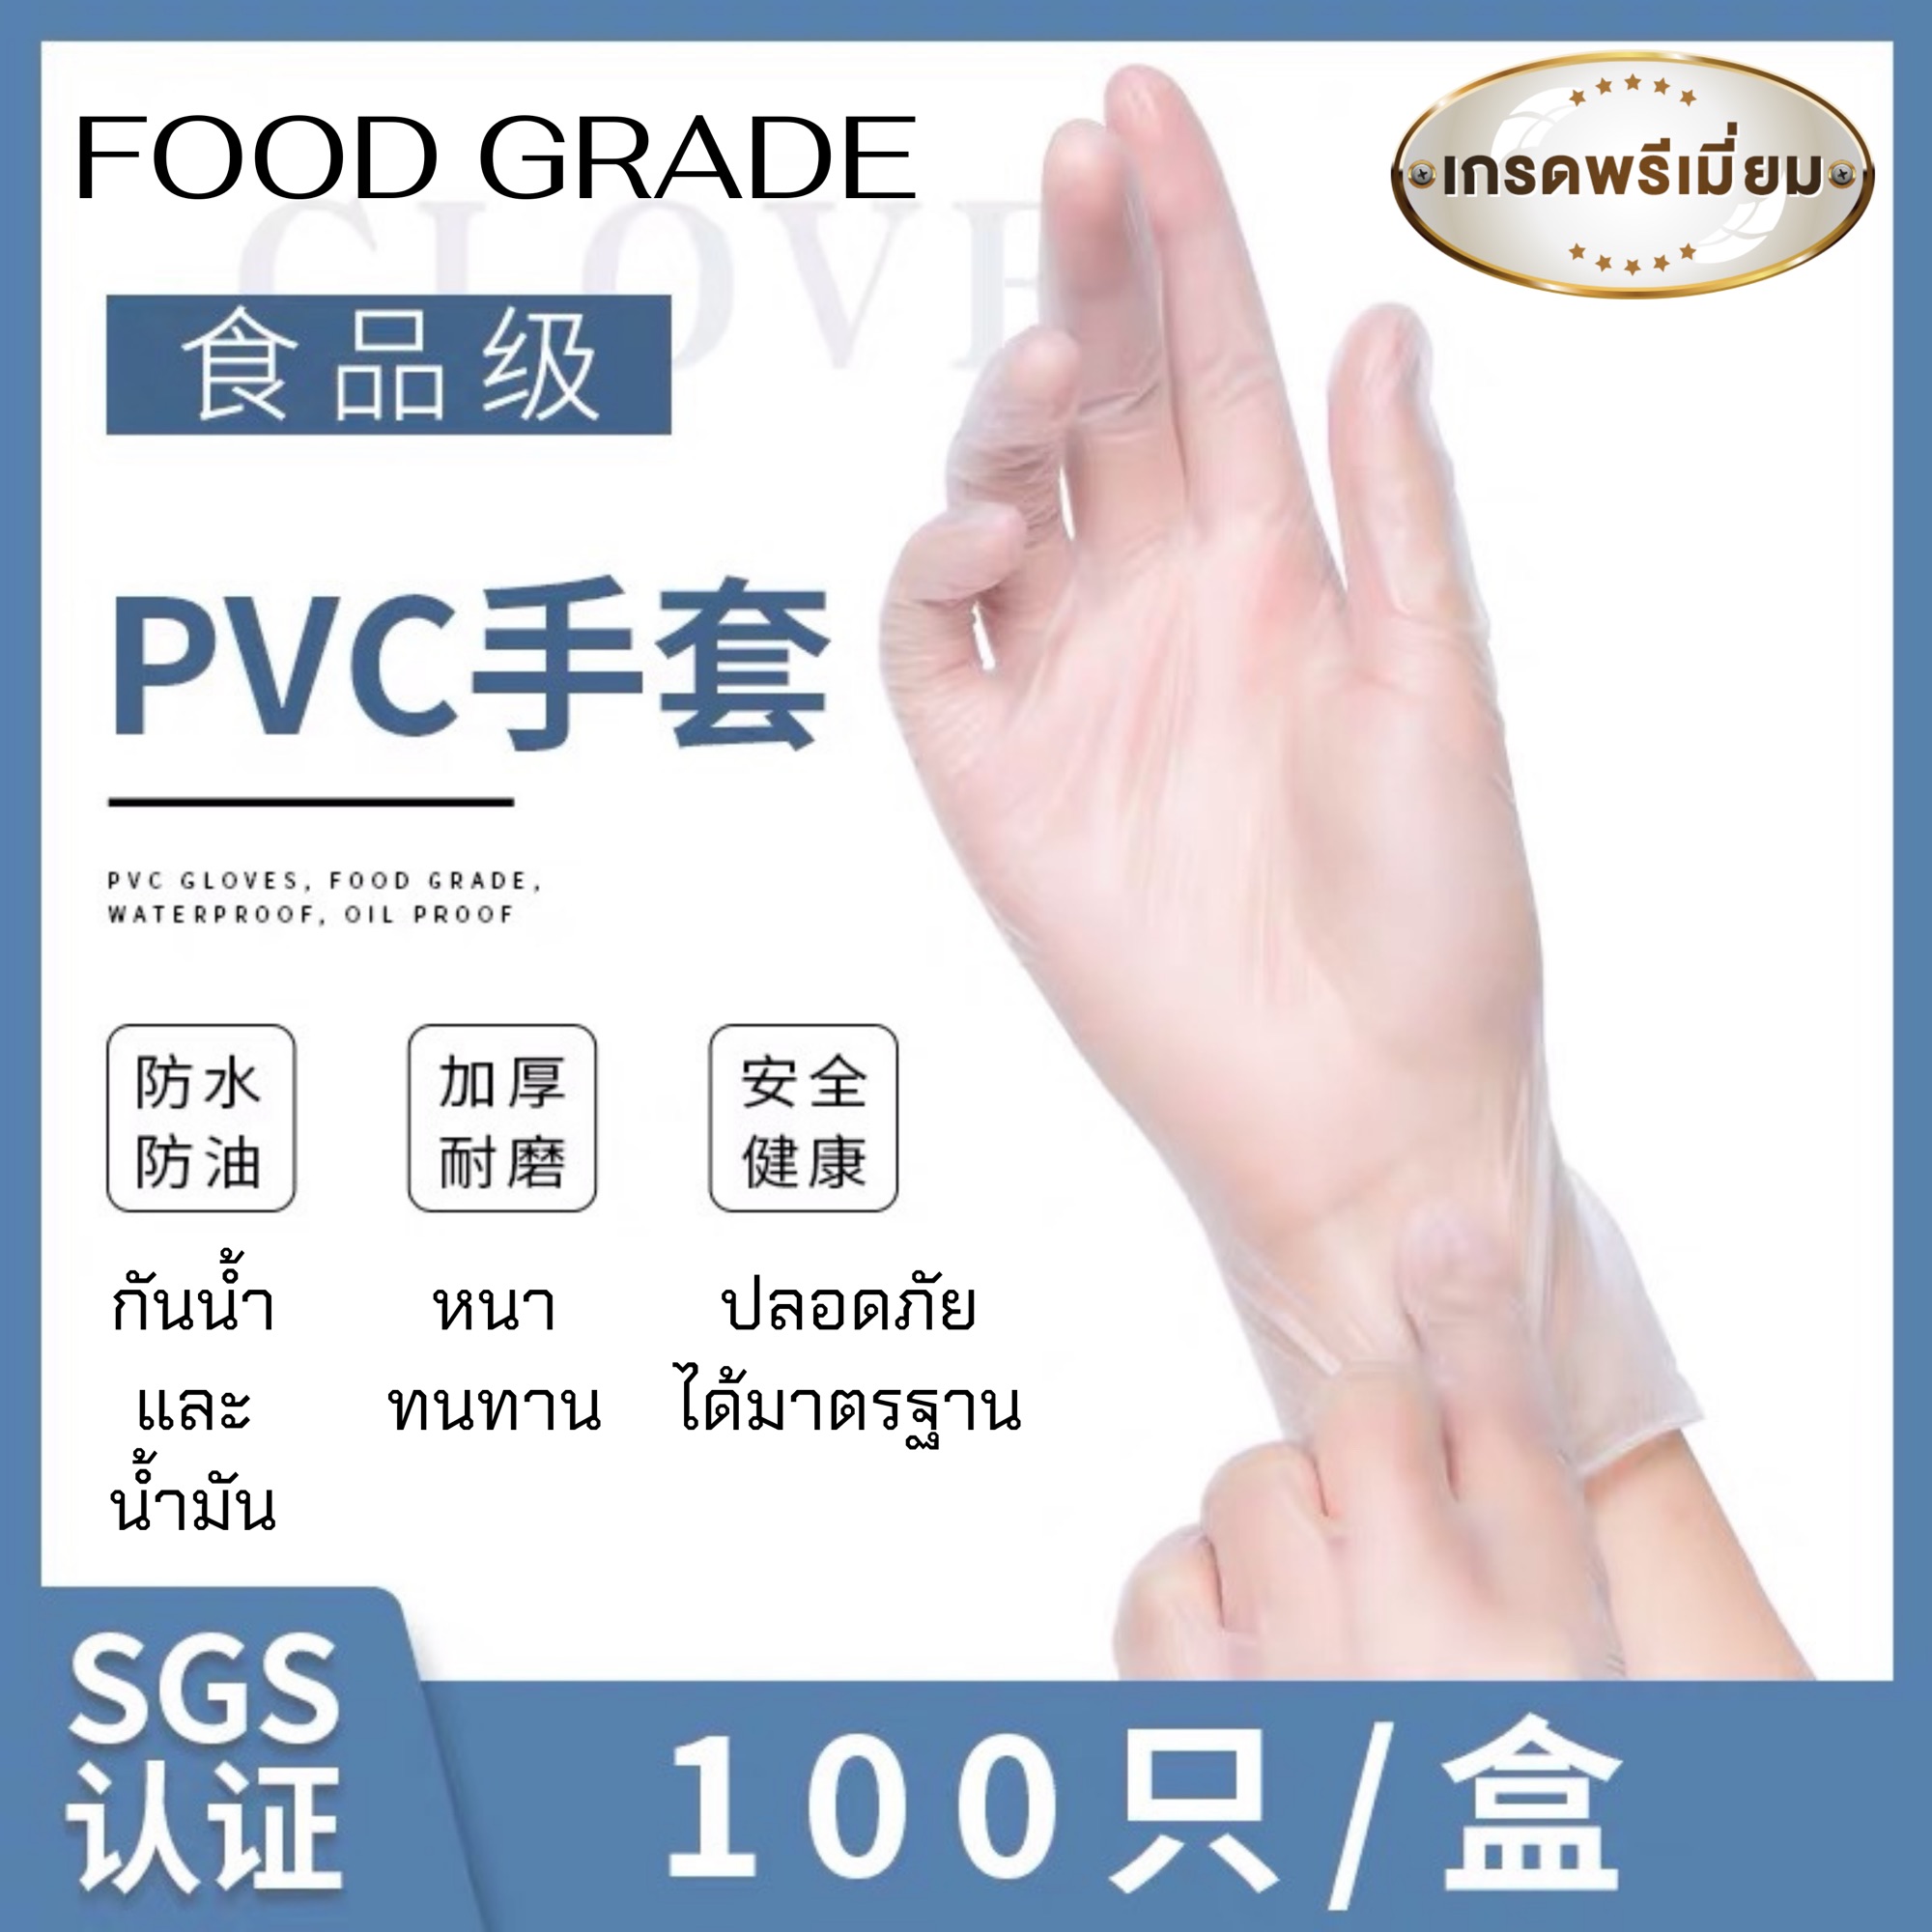 🔥พร้อมส่ง🔥 ถุงมือ อเนกประสงค์ PVC (FOOD GRADE) ถุงมือทำขนม ถุงมือ ถุงมือยาง ถุงมือซิลิโคน กันน้ำมัน กันสารเคมี